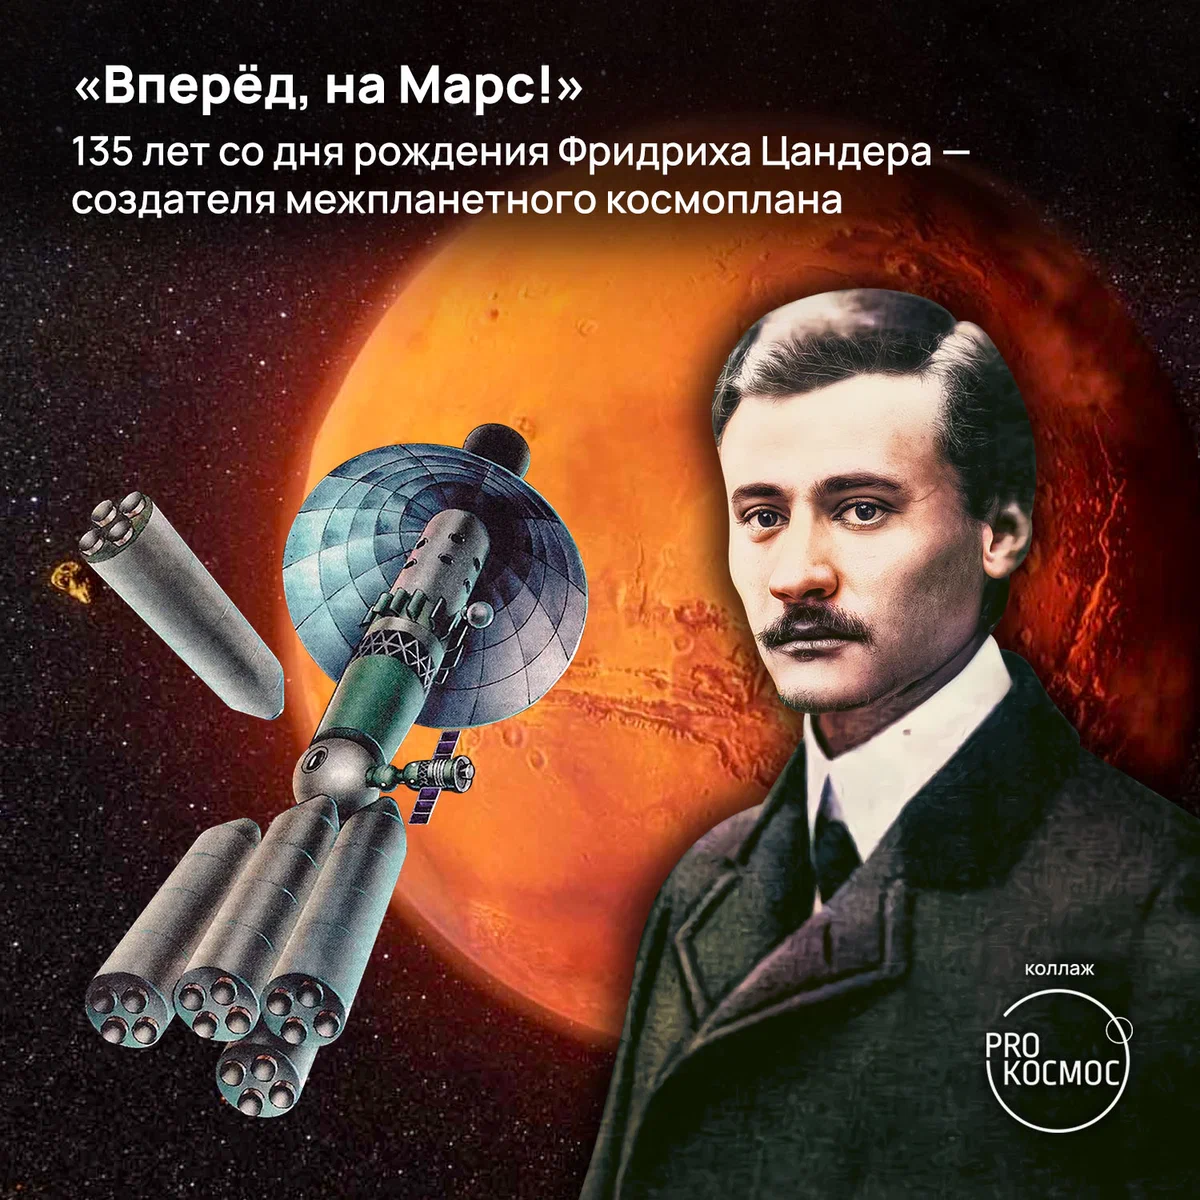 «Вперед, на Марс!» 135 лет со дня рождения Фридриха Цандера — создателя межпланетного космоплана height=1200px width=1200px